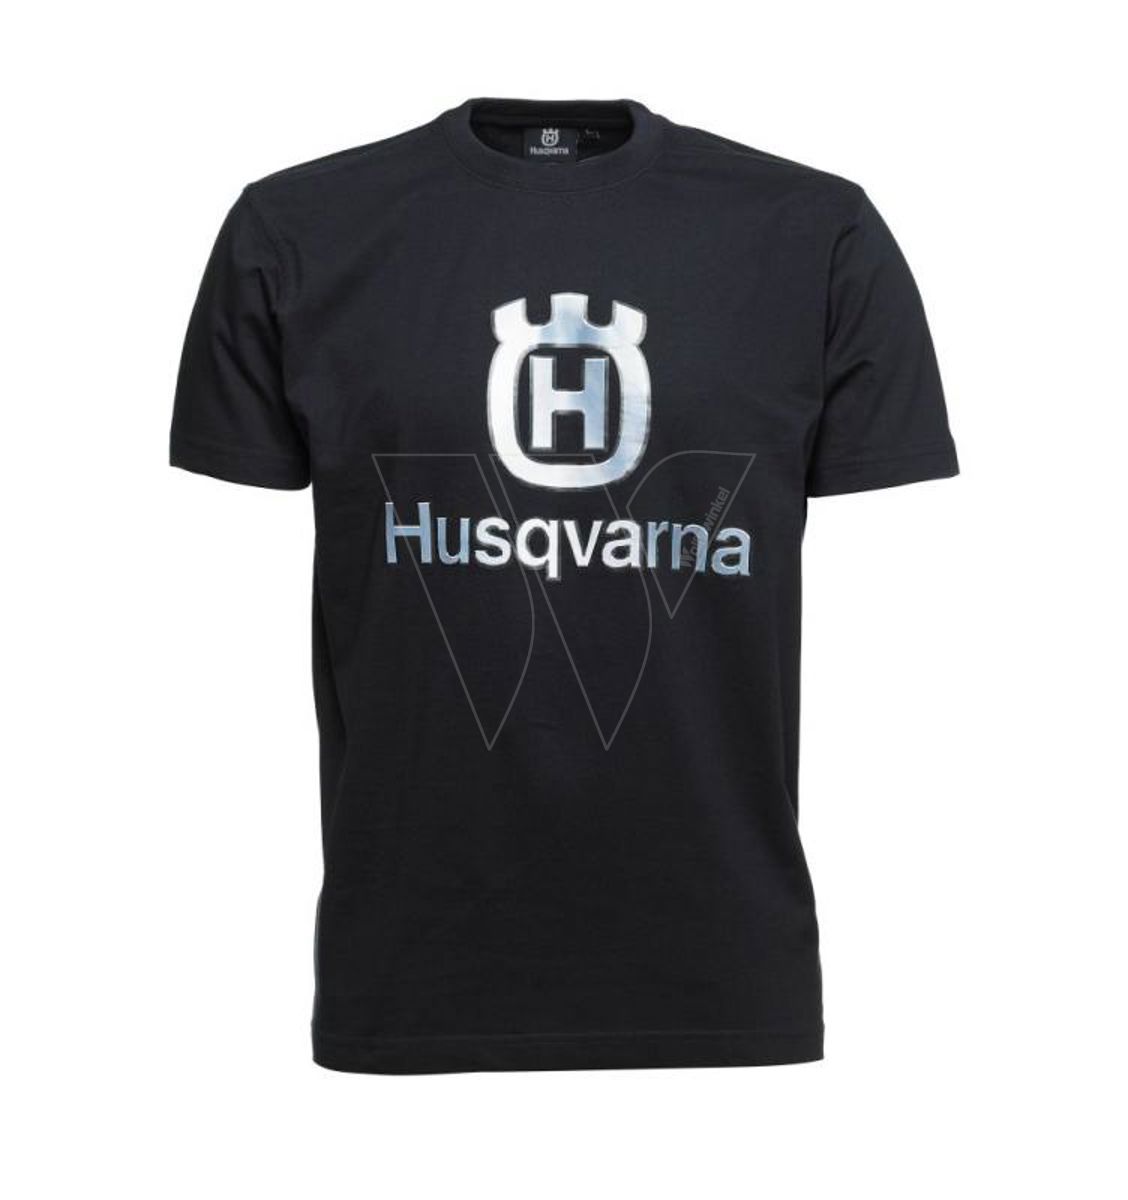 Husqvarna t-shirt mit großem logo - l